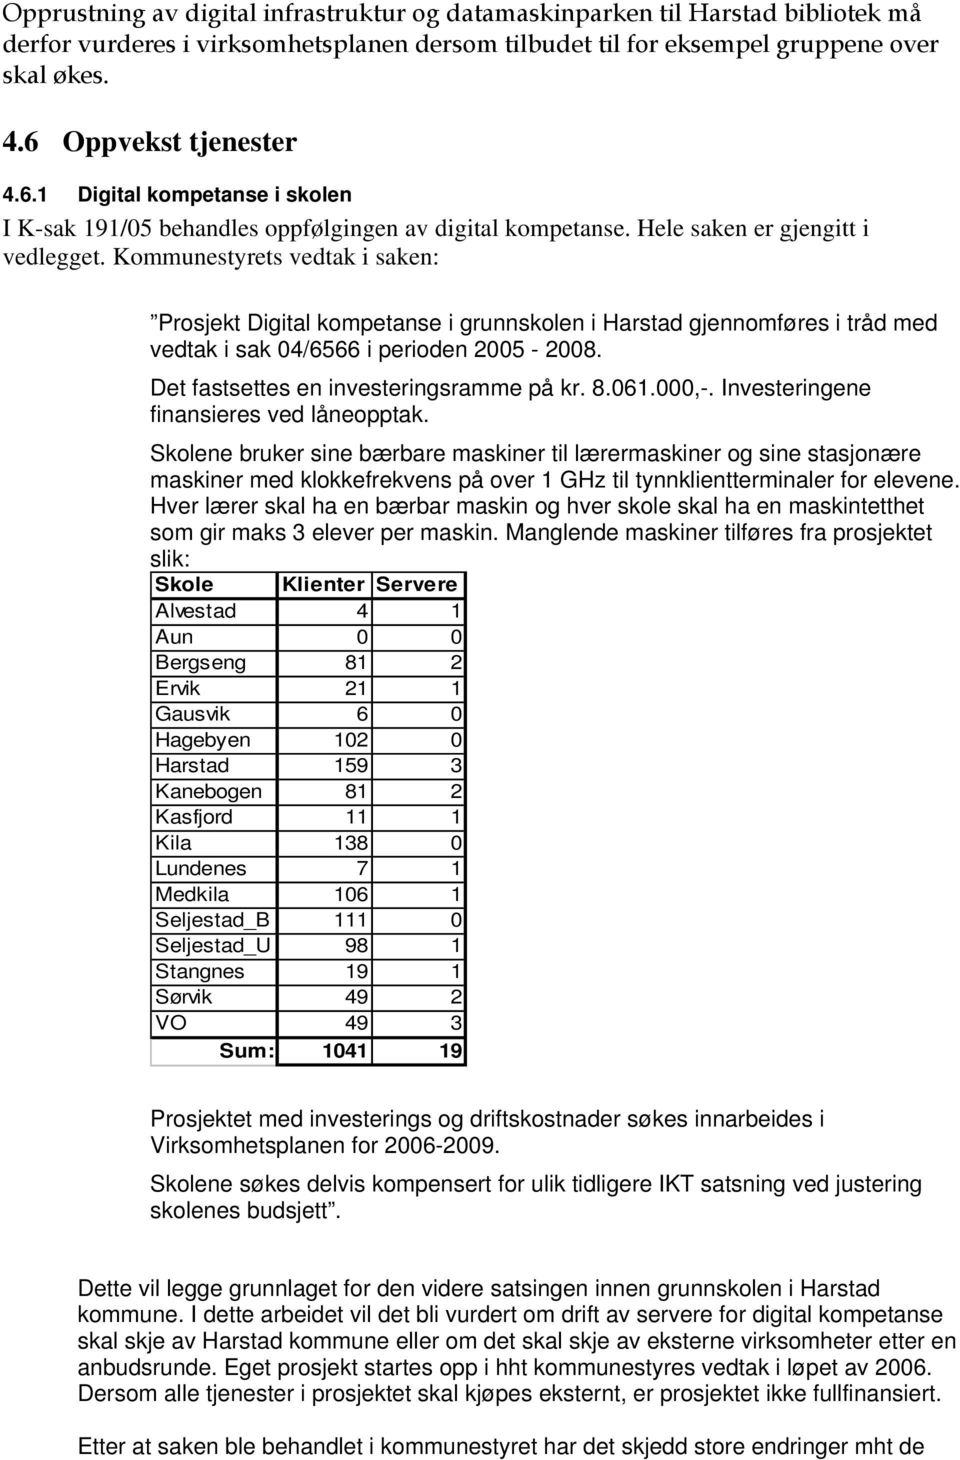 Kommunestyrets vedtak i saken: Prosjekt Digital kompetanse i grunnskolen i Harstad gjennomføres i tråd med vedtak i sak 04/6566 i perioden 2005-2008. Det fastsettes en investeringsramme på kr. 8.061.